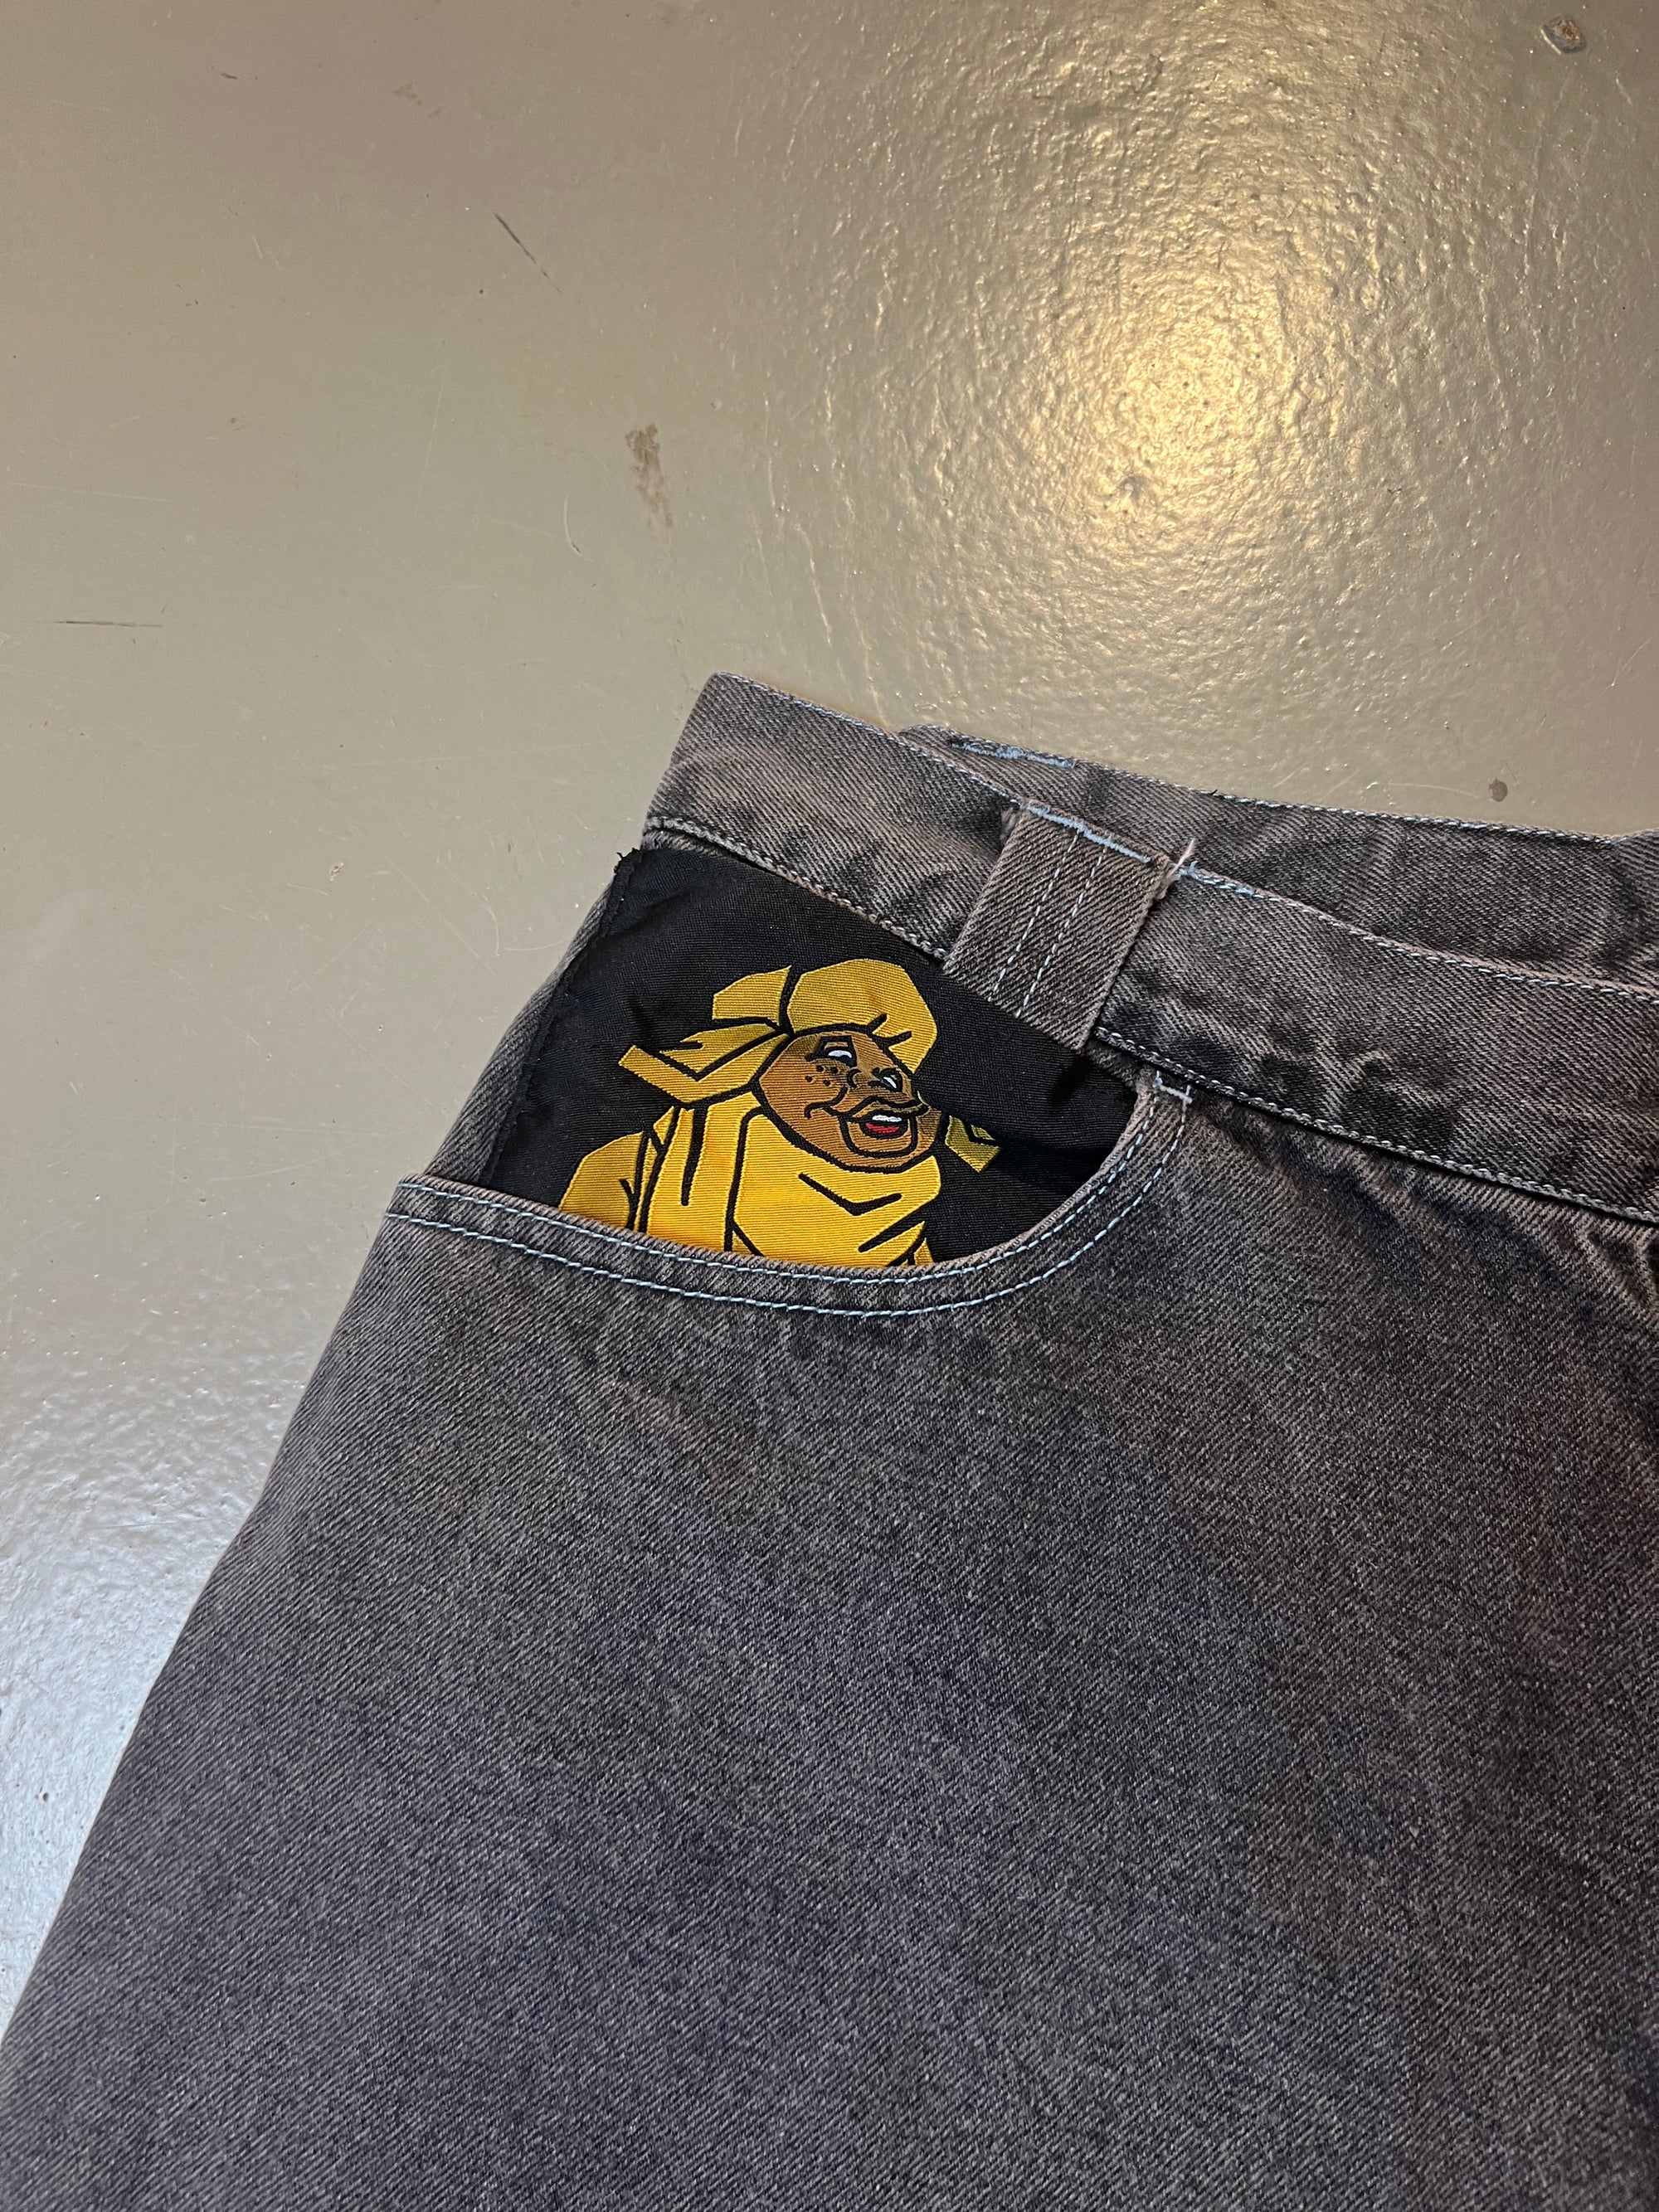 bild von der Hosentasche mit Print von grauen baggy Fubu Shorts mit gelbem Backprint von vorne